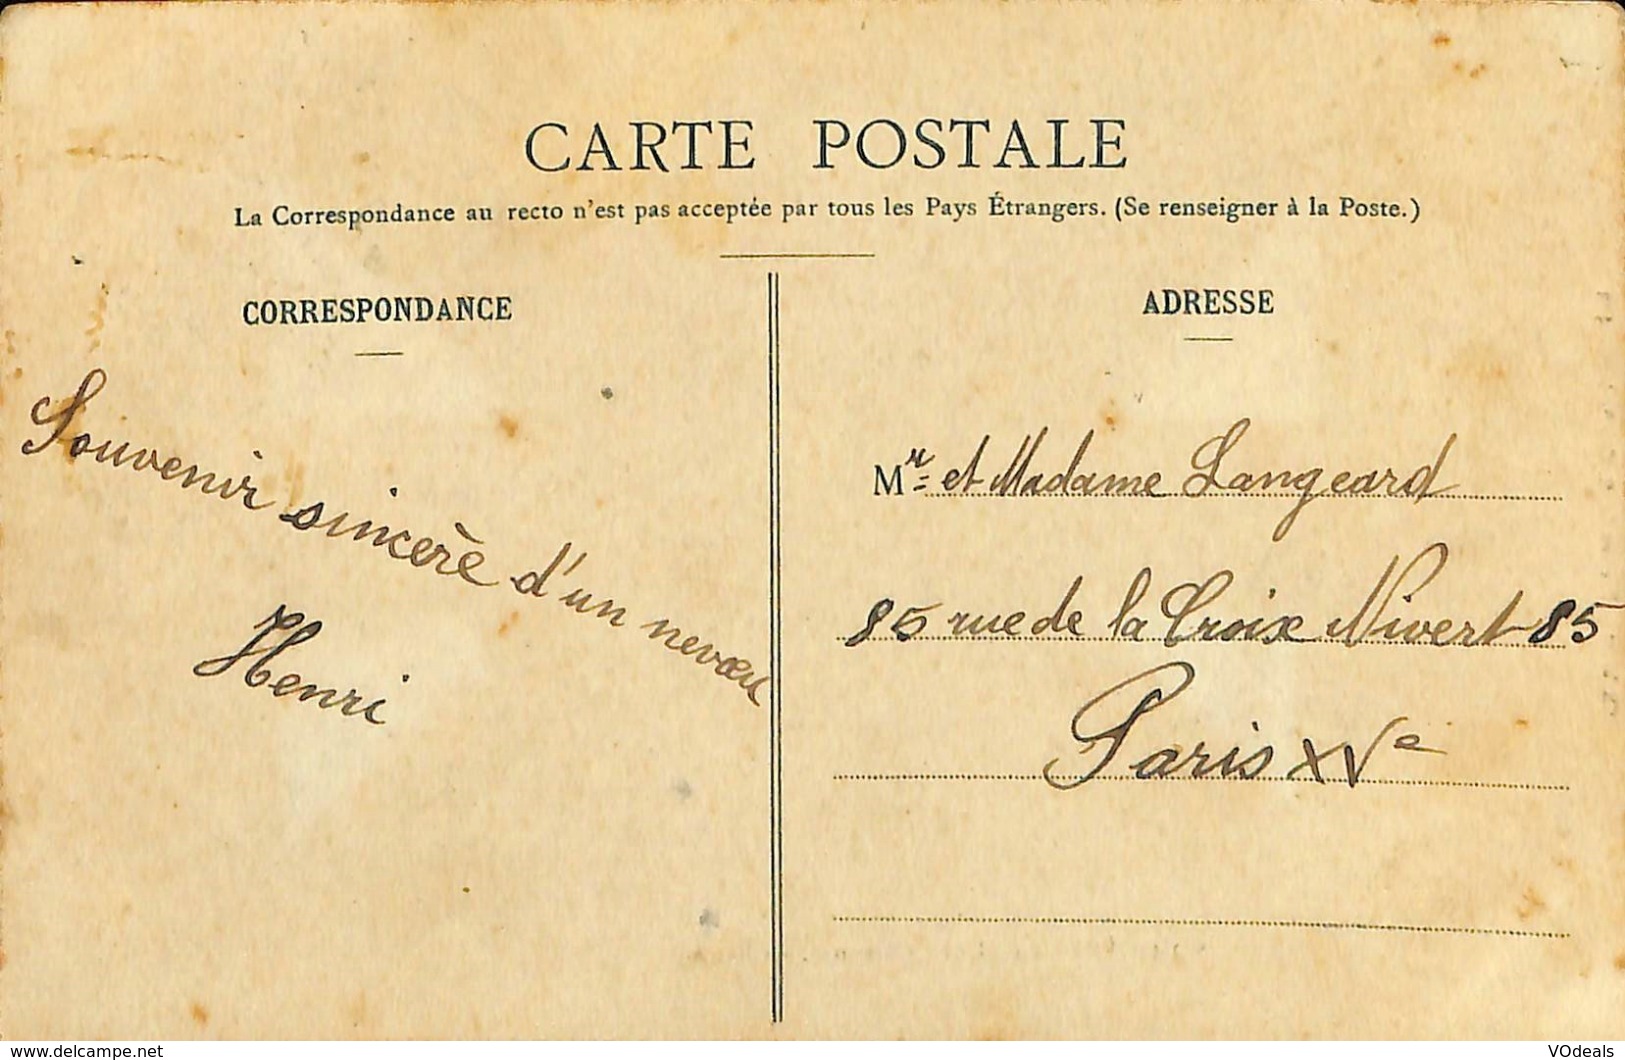 CPA - France - Lot de 10 cartes postales - Lot 20